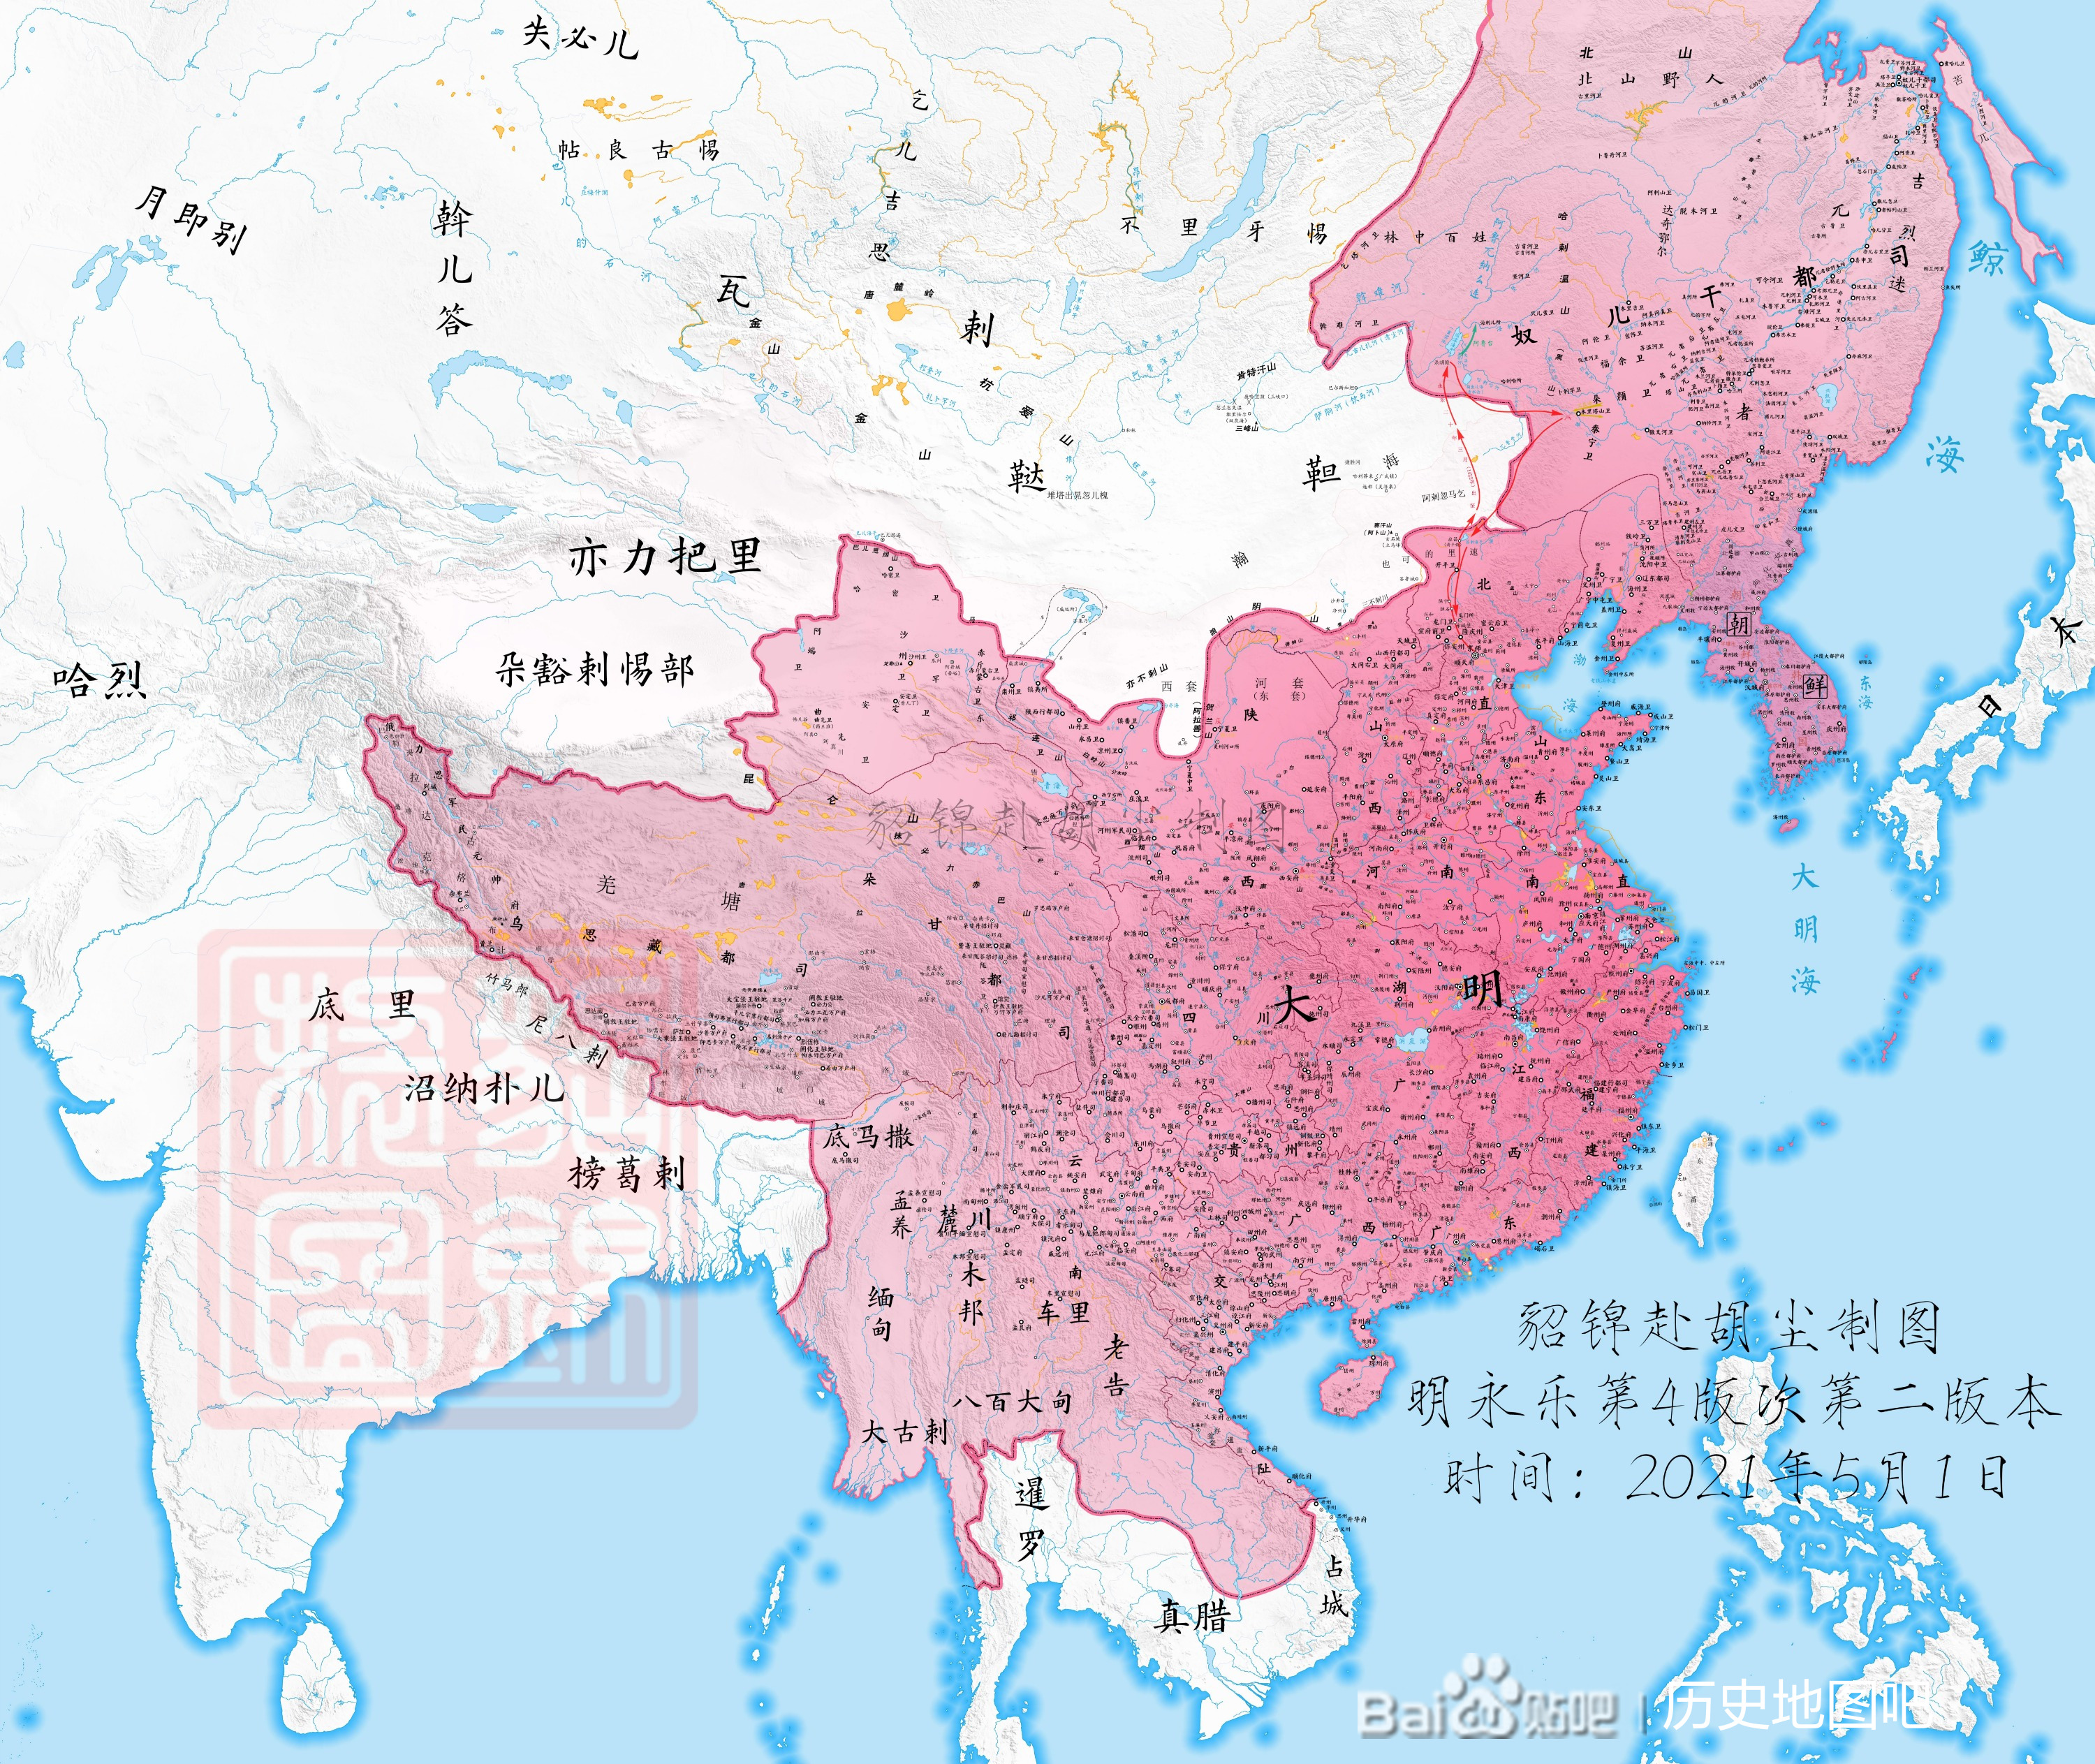 貂锦制图 可能是目前篇幅最宏大的明朝地图《皇明永乐二十年舆图》